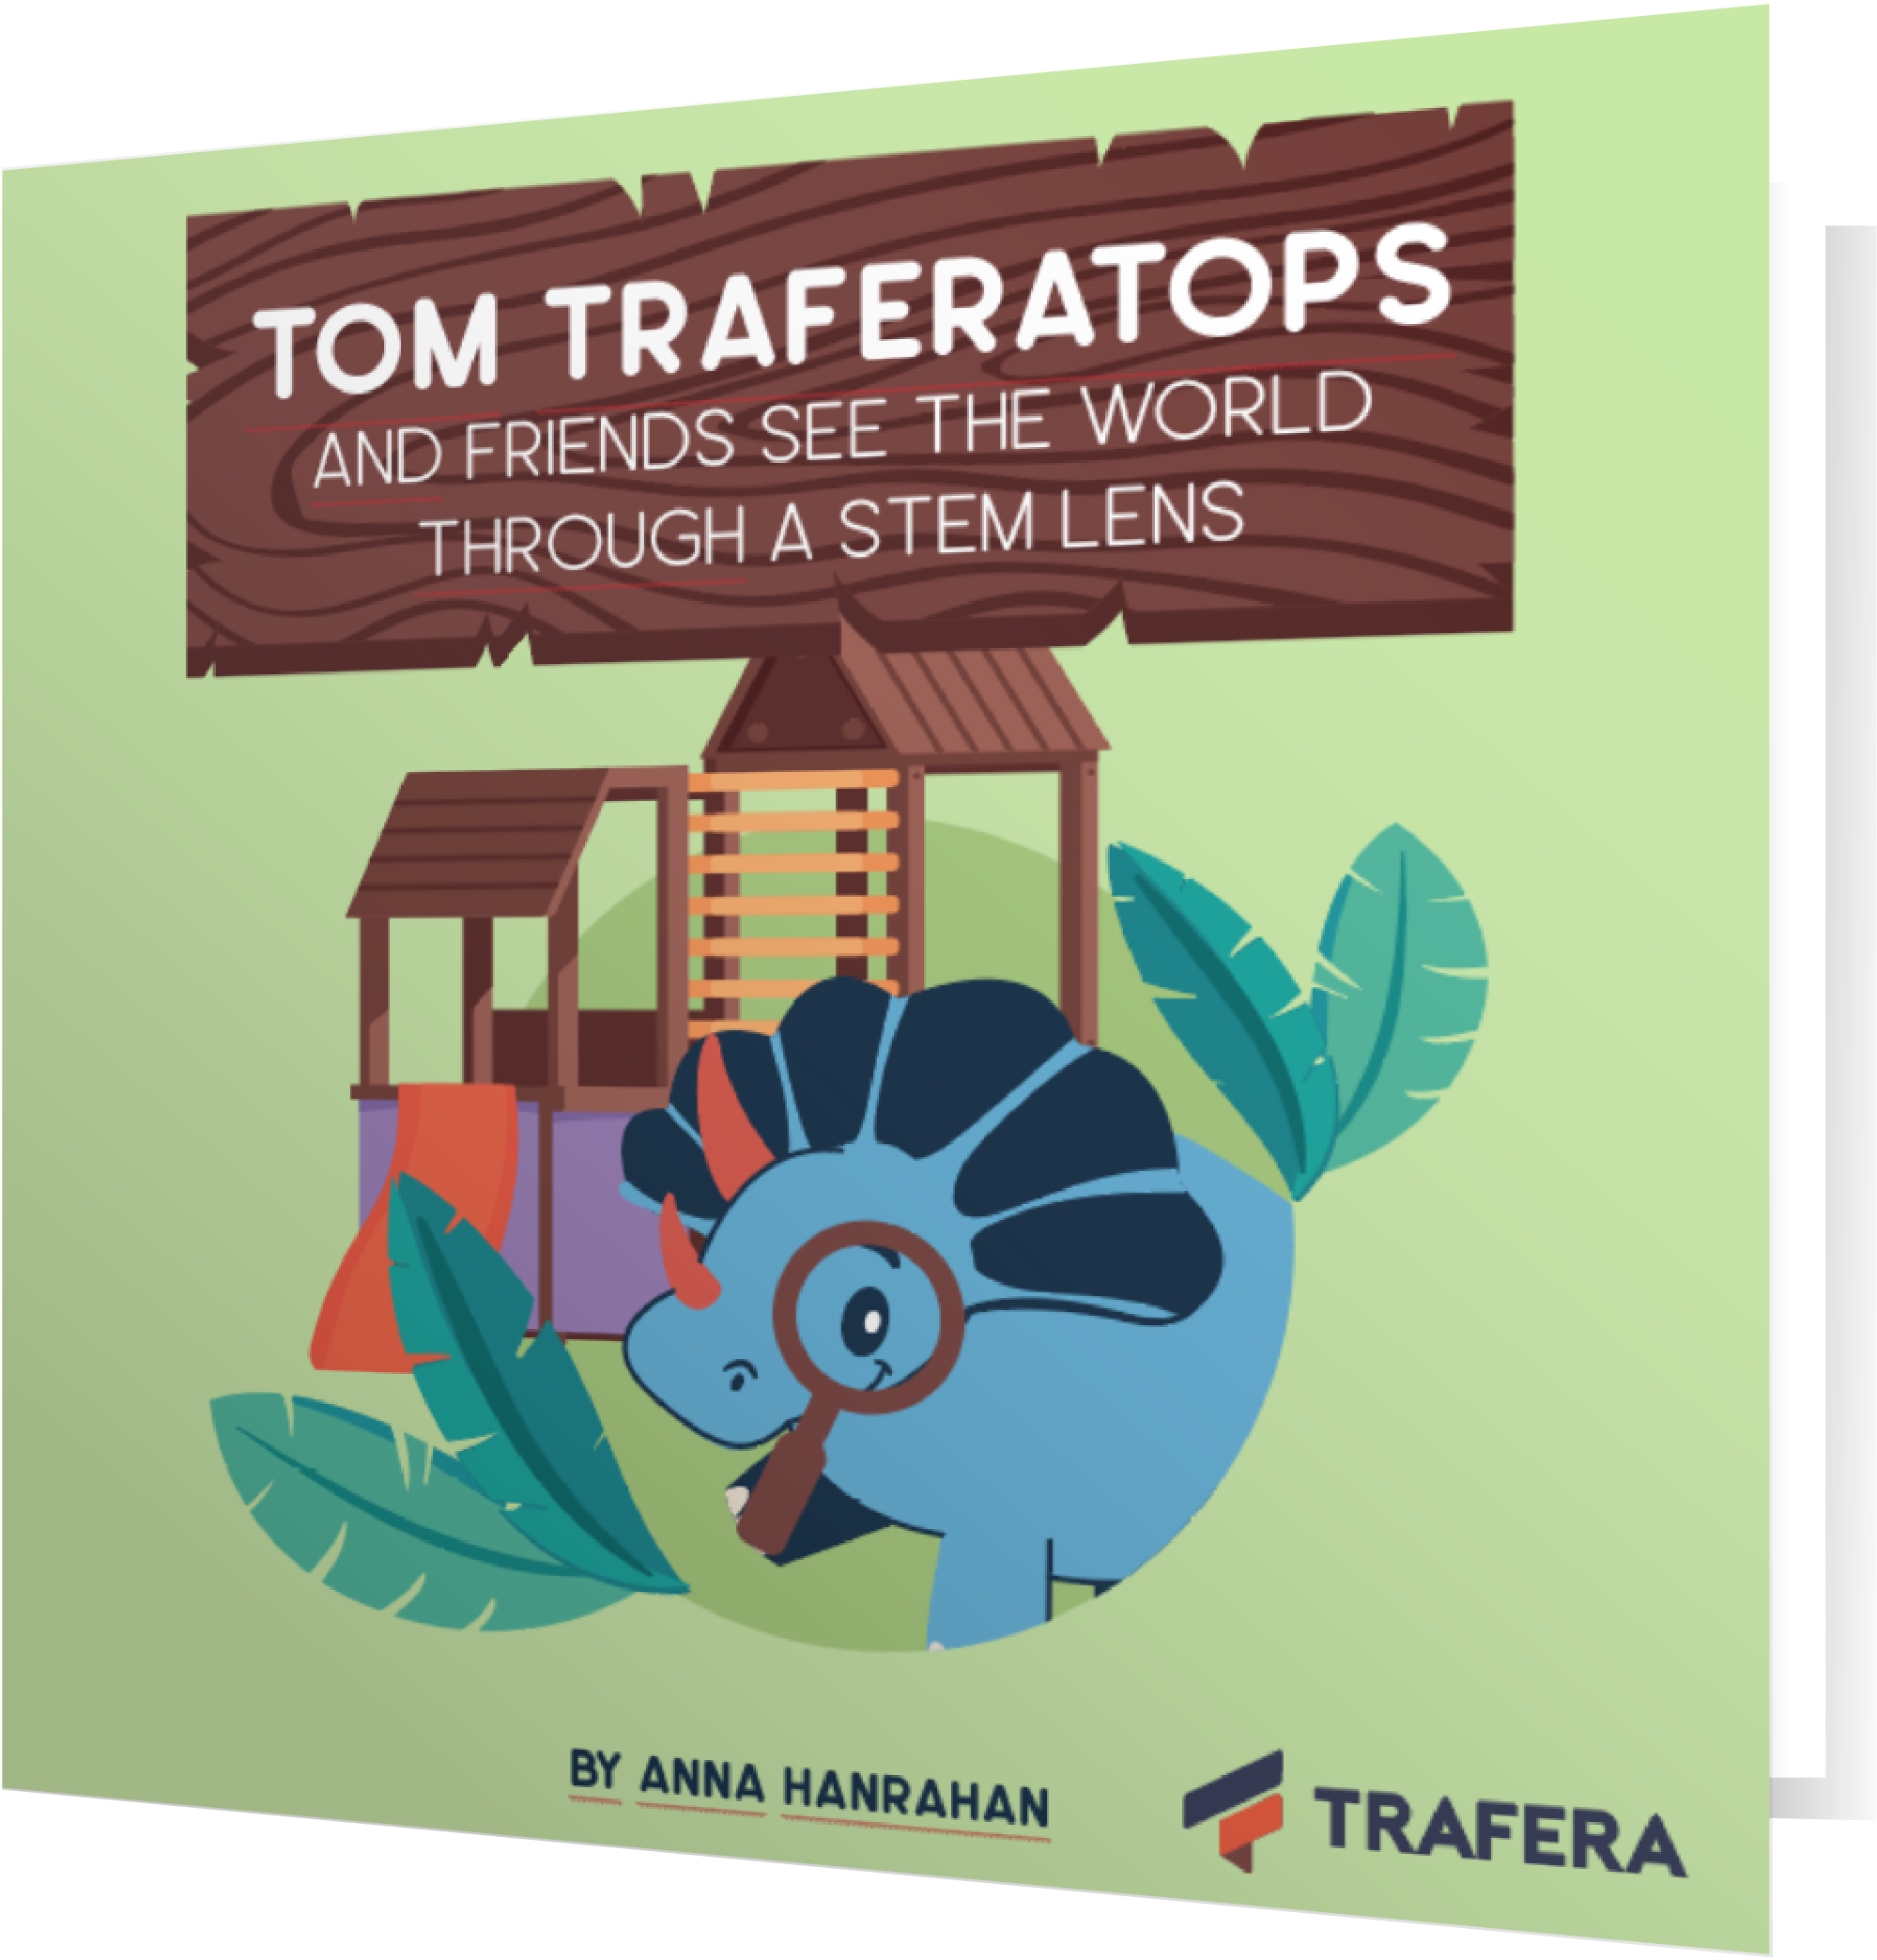 tom-traferatops-book2